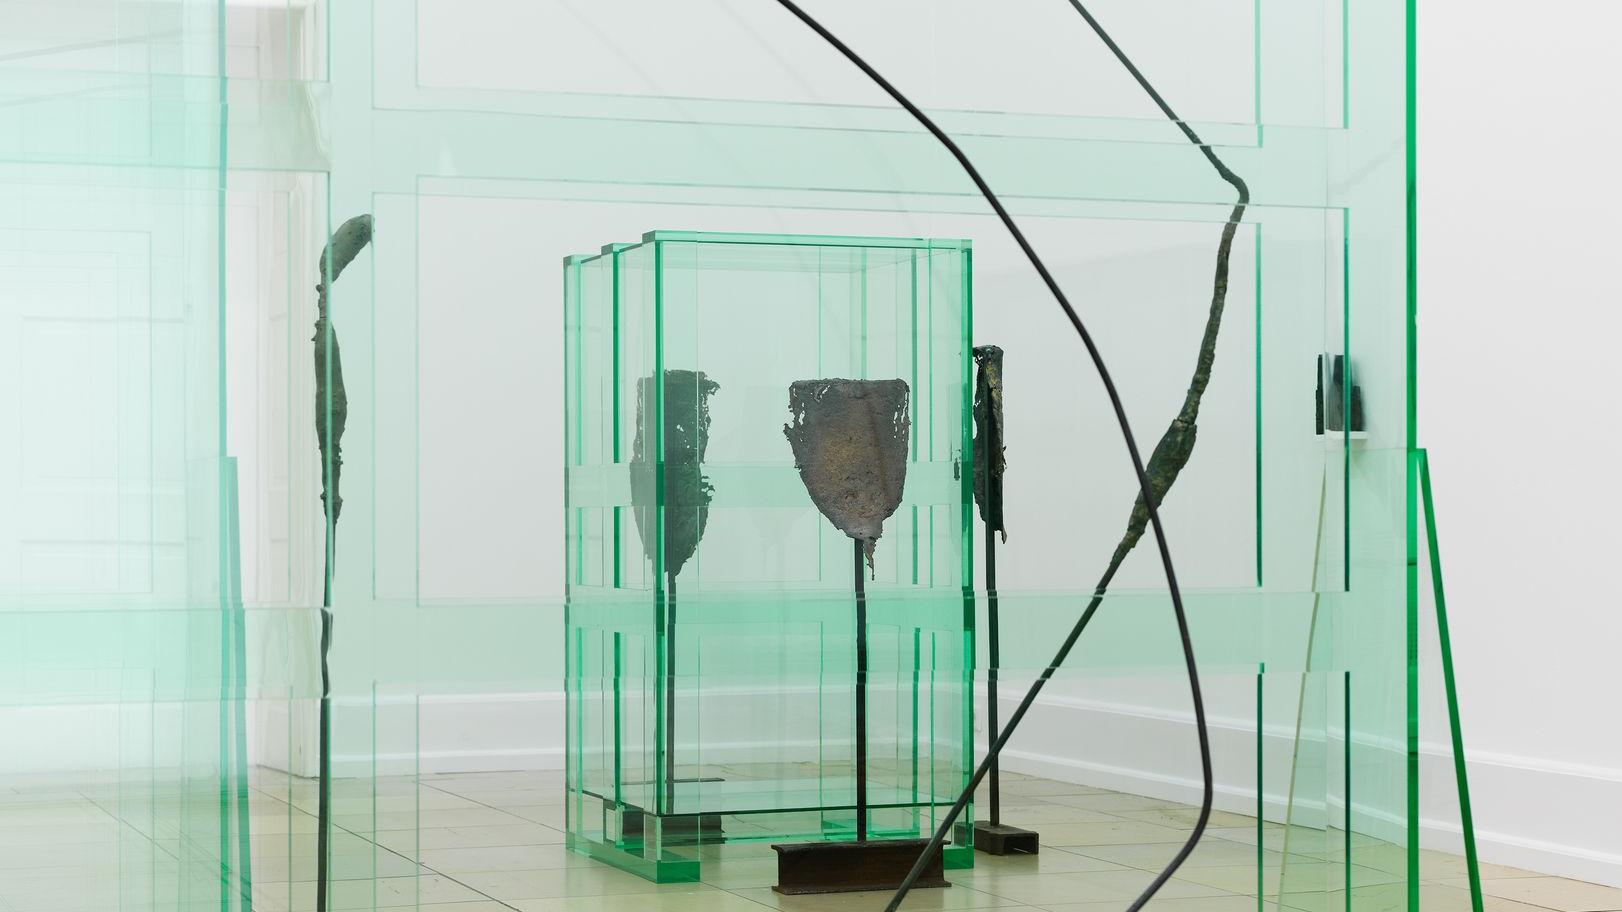 Tatiana Trouvé, Les indéfinis, 2014, Kunsthalle Nürnberg 2014/15, Foto: Annette Kradisch, Nürnberg; © VG Bild-Kunst Bonn, 2015